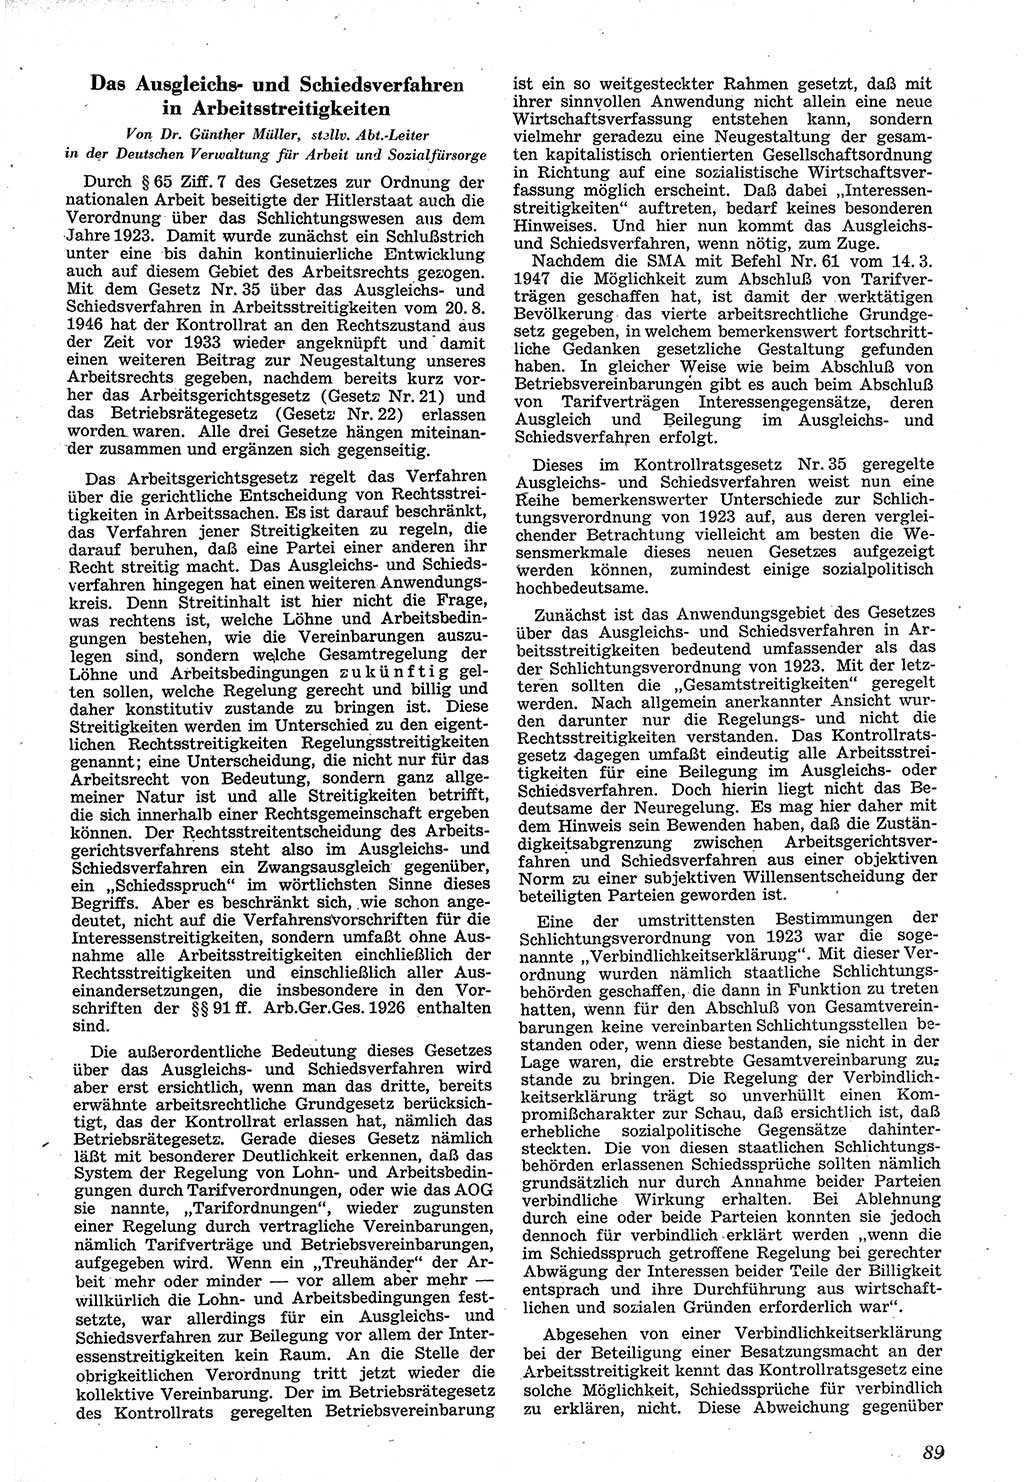 Neue Justiz (NJ), Zeitschrift für Recht und Rechtswissenschaft [Sowjetische Besatzungszone (SBZ) Deutschland], 1. Jahrgang 1947, Seite 89 (NJ SBZ Dtl. 1947, S. 89)